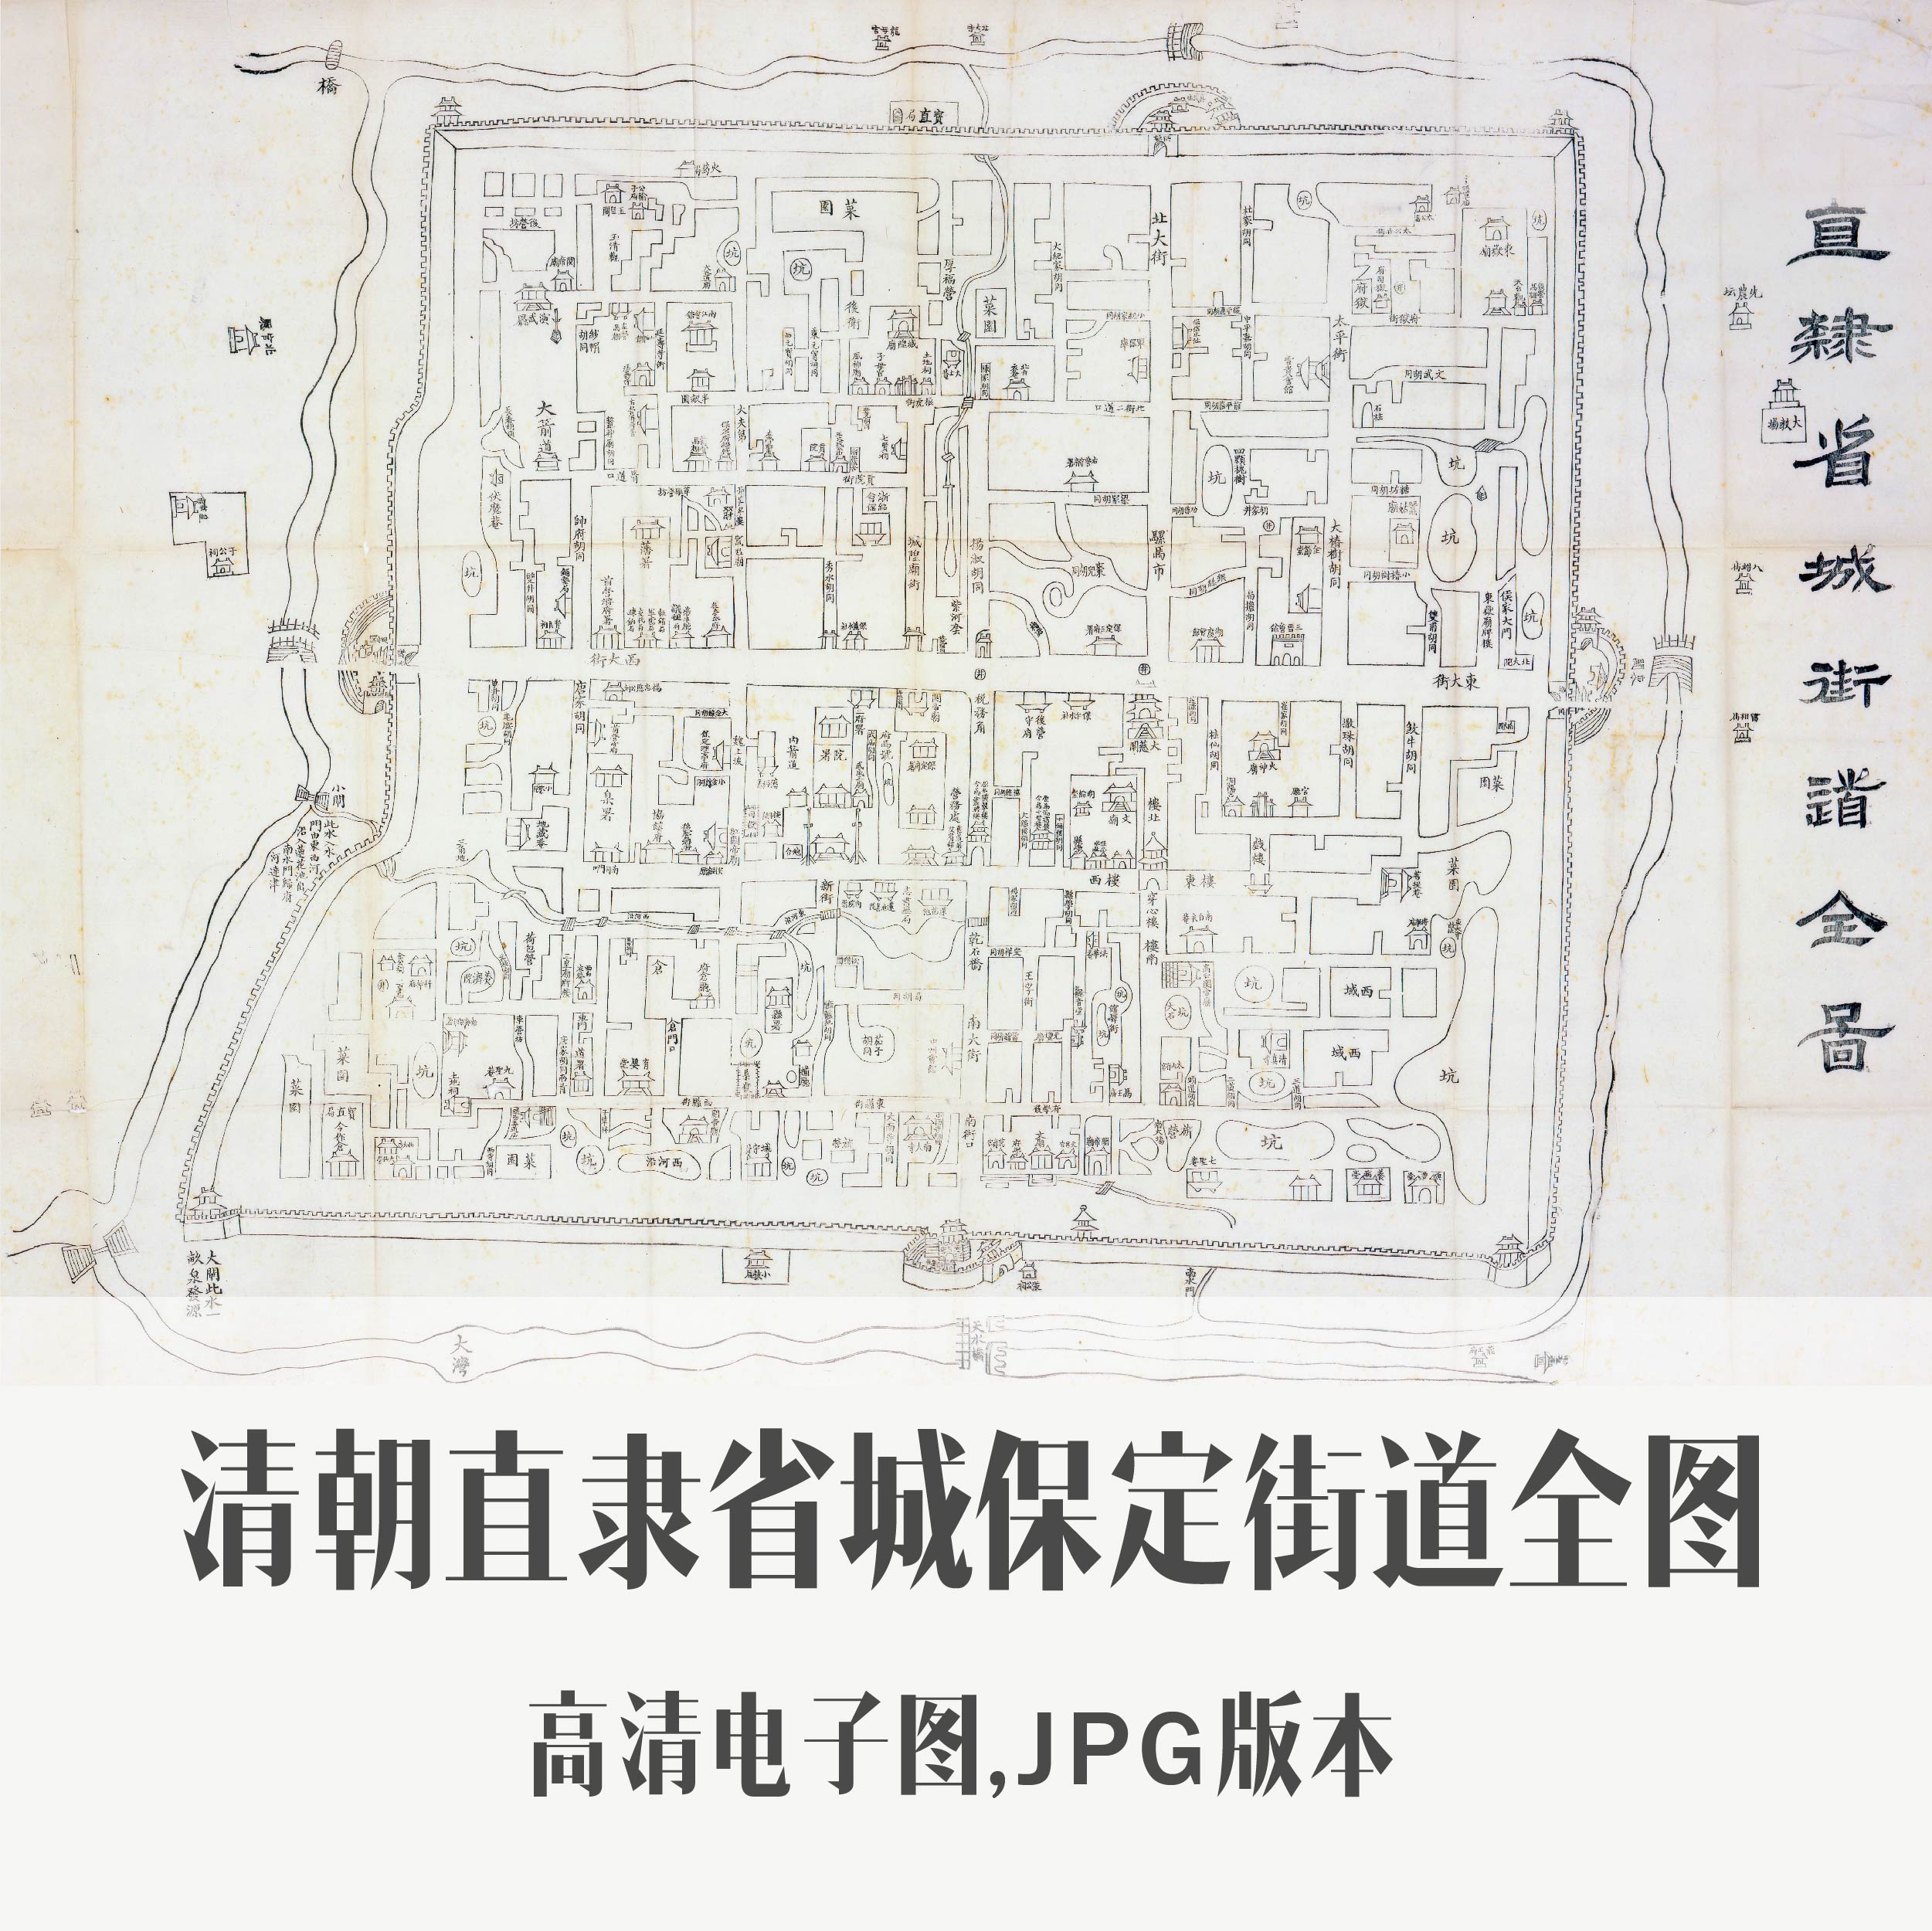 清朝直隶省城保定街道全图电子老地图手绘历史地理资料素材